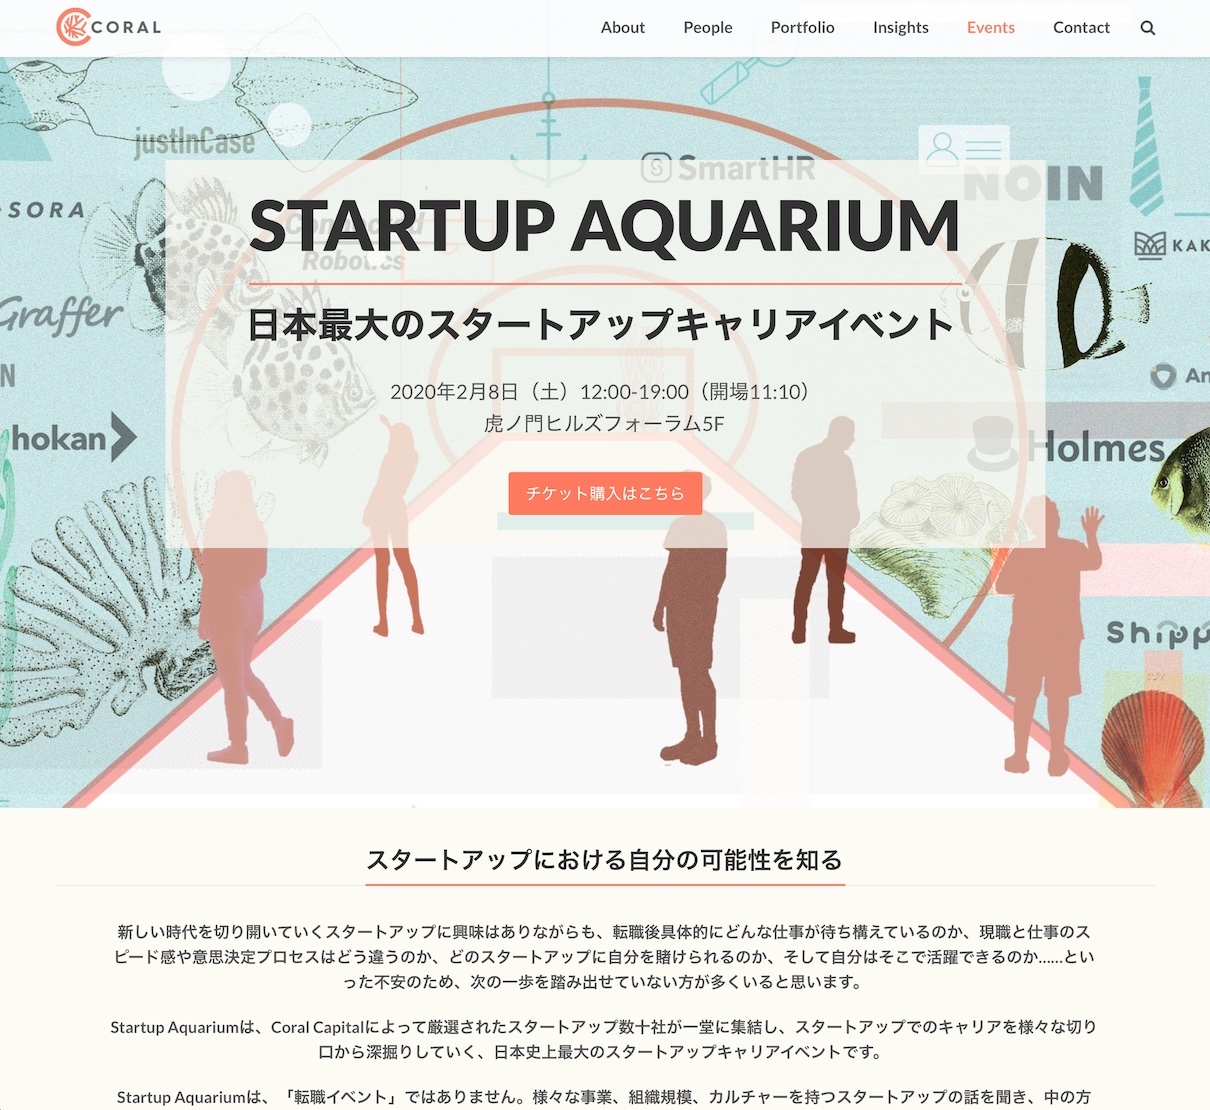 Startup Aquarium